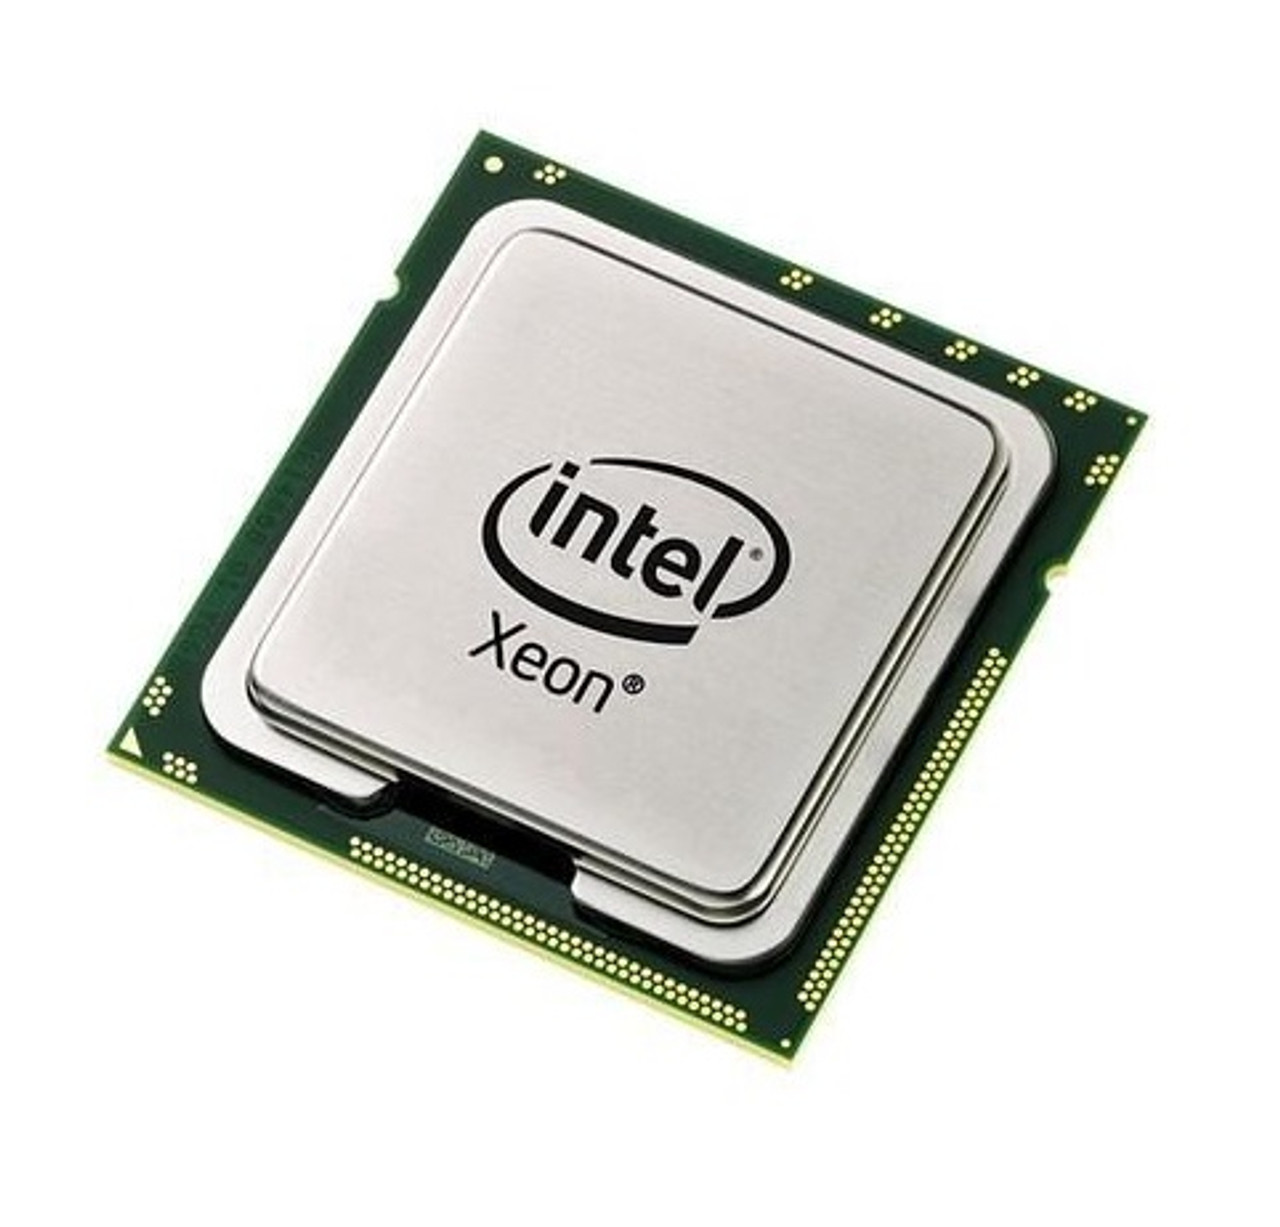 223-5494 - Dell 2.83GHz 1333MHz FSB 12MB L2 Cache Intel Xeon E5440 Quad Core Processor